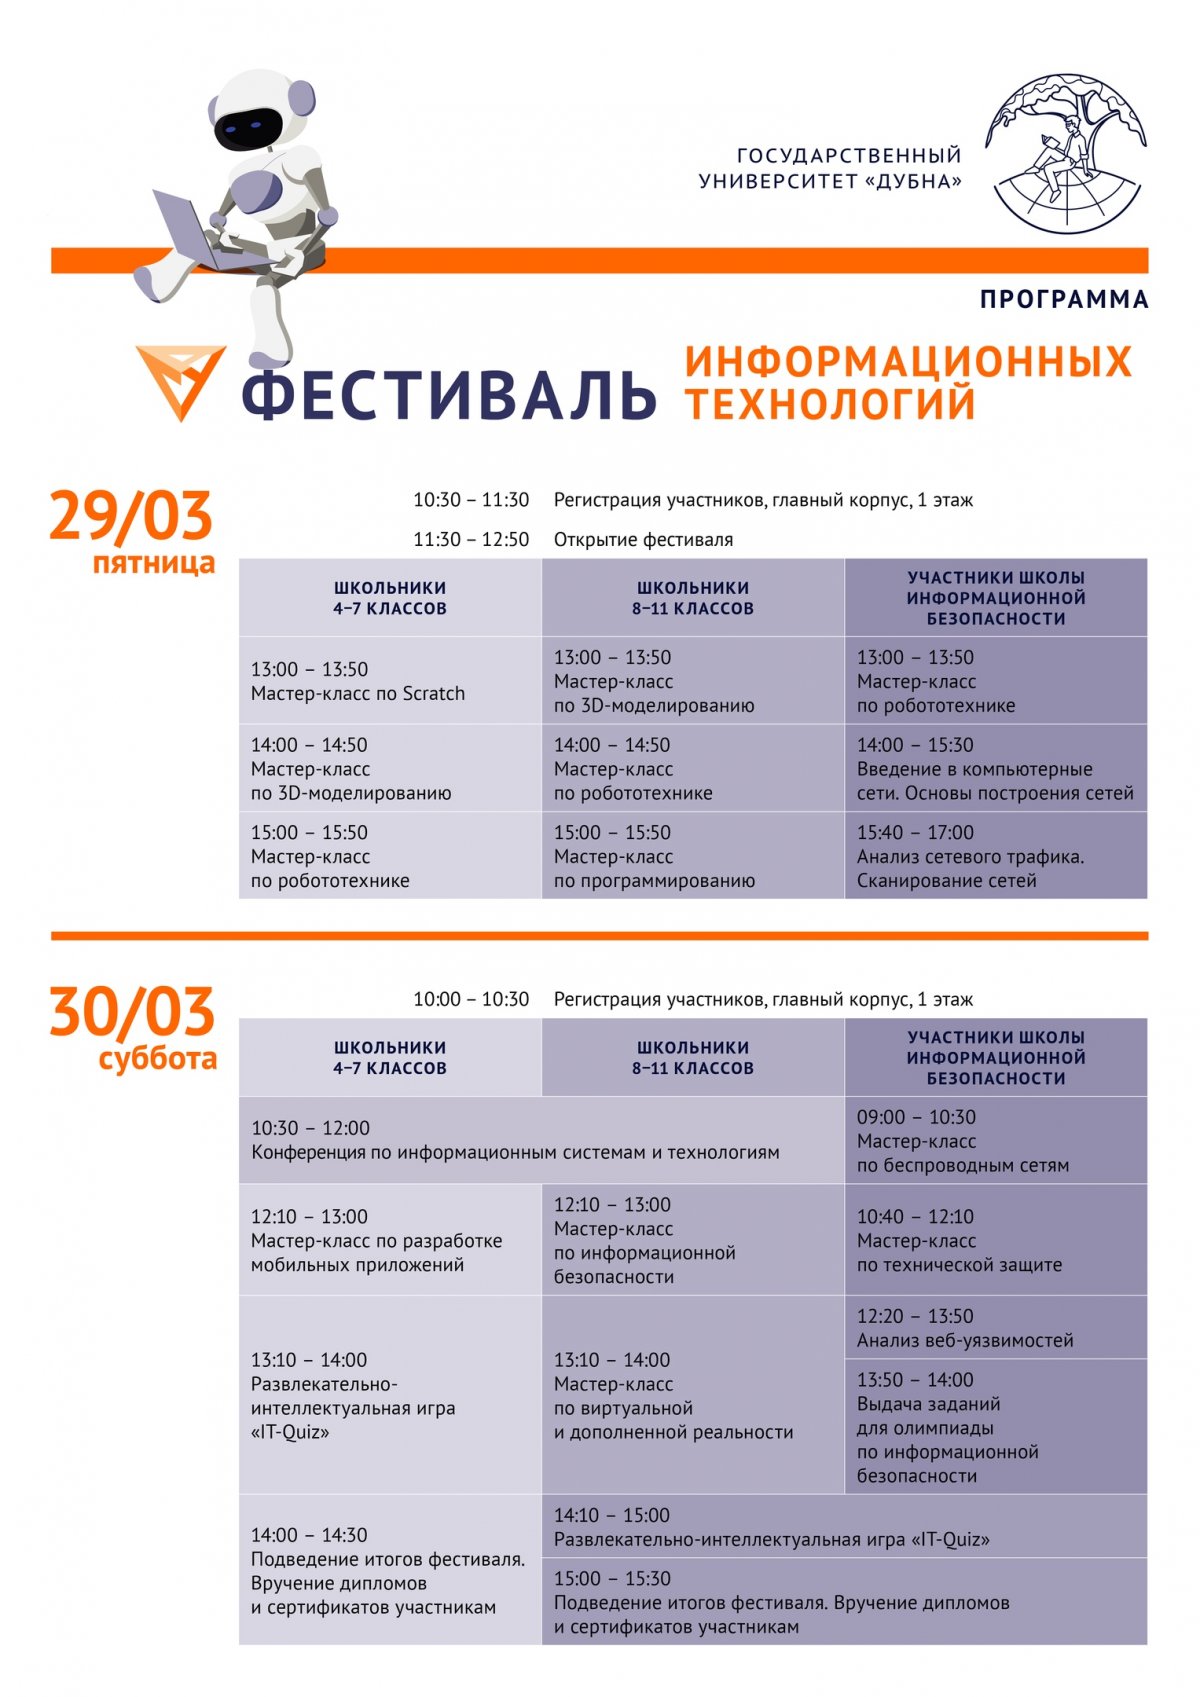 📢 Регистрация на VI Открытый фестиваль в области информационных технологий ИСАУ продолжается 👉https://vk.cc/92nZQ6